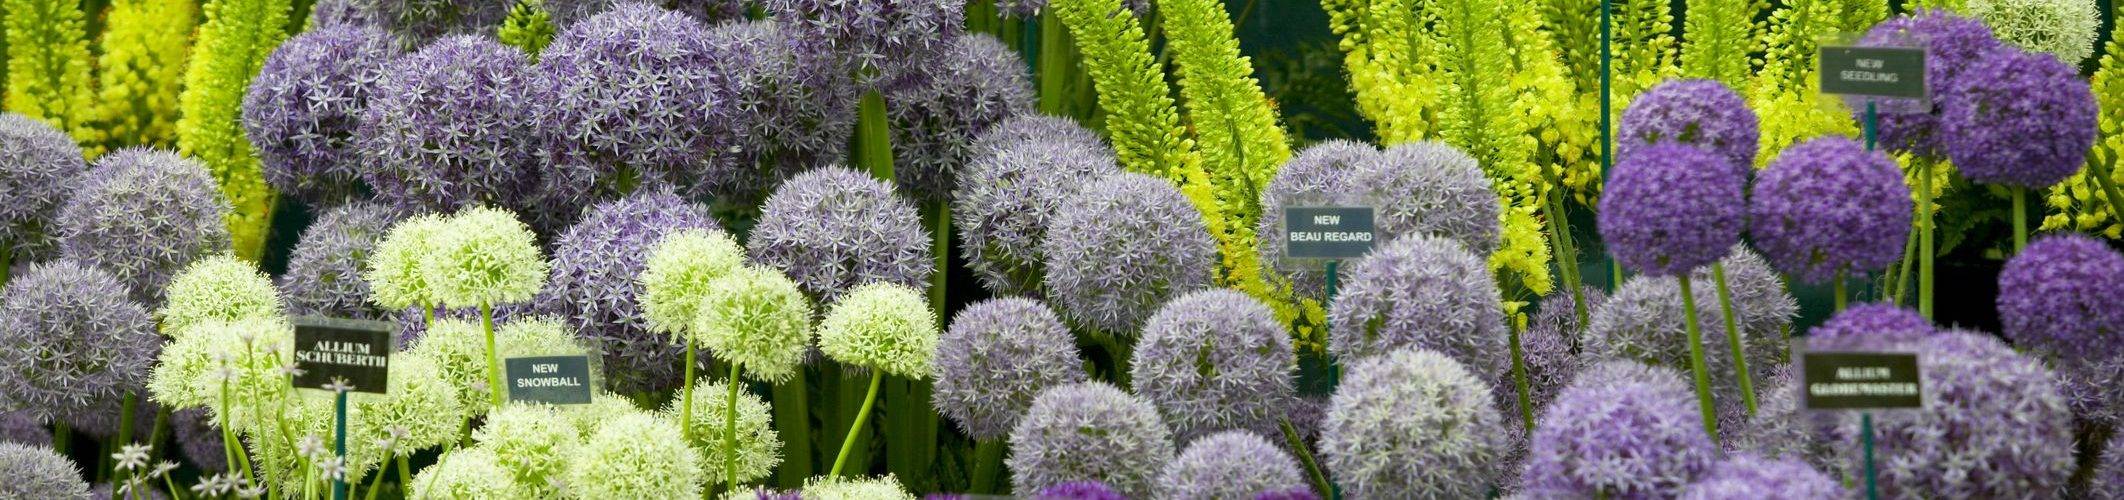 Декоративный лук — эффектное украшение любого сада